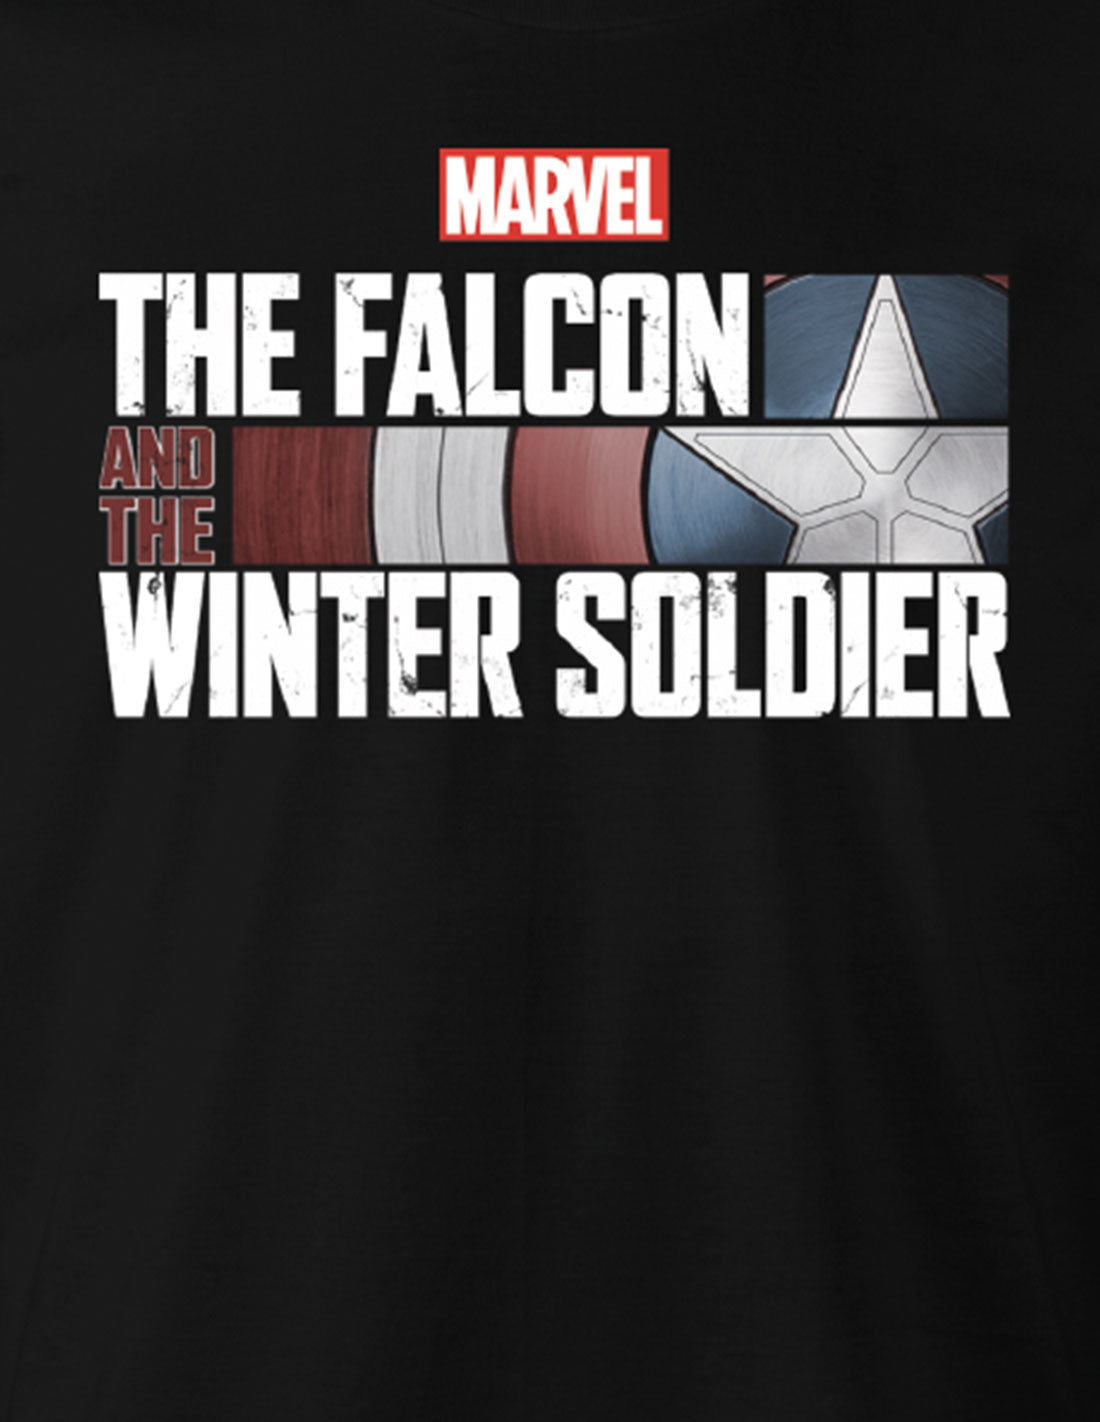 T-shirt Falcon et le Soldat de l'Hiver MARVEL - The Falcon and the Winter Soldier logo